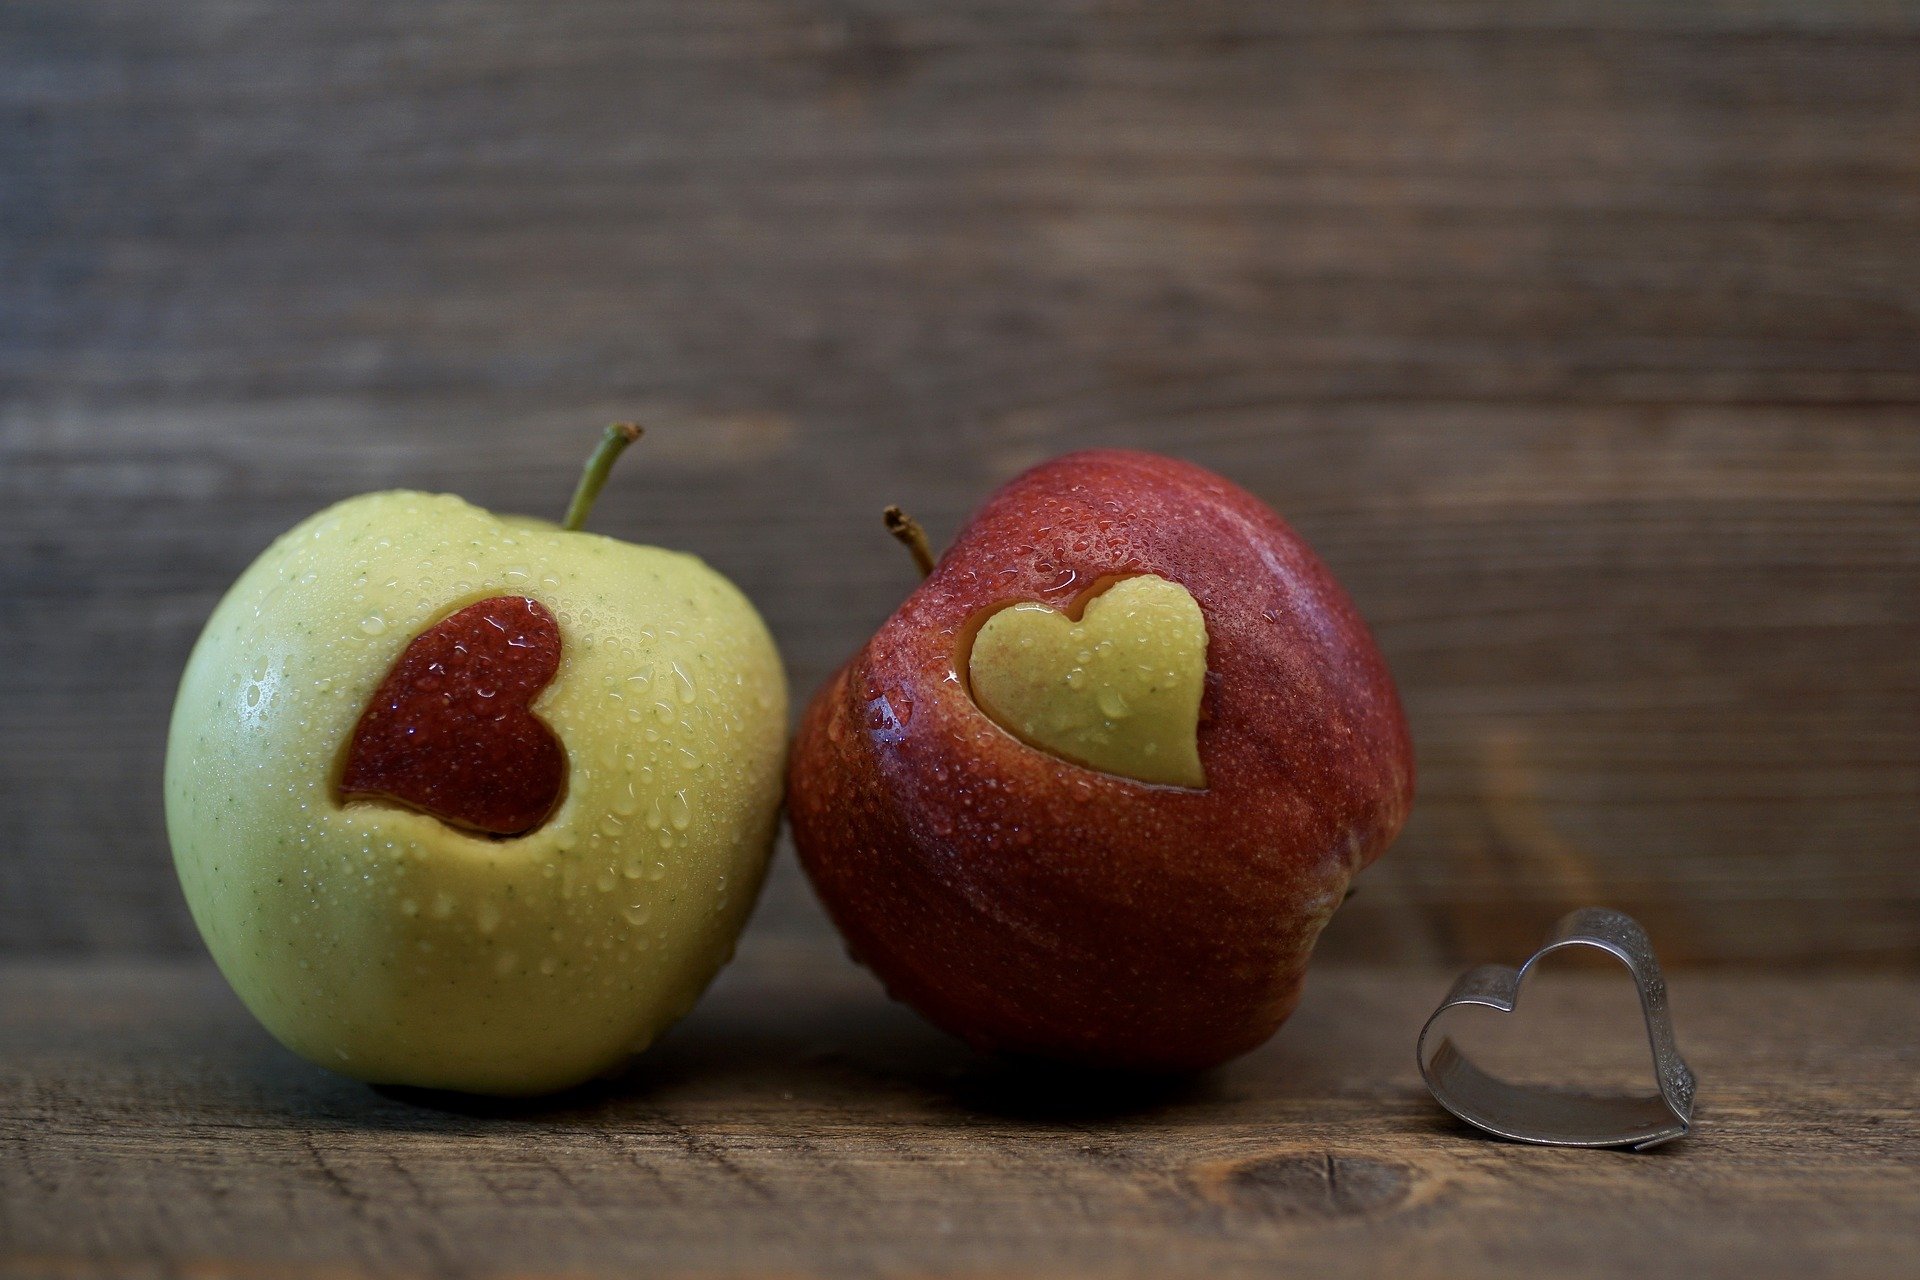 أيهما أفضل التفاح الأخضر أم الأحمر وماهو الفرق بينهما؟